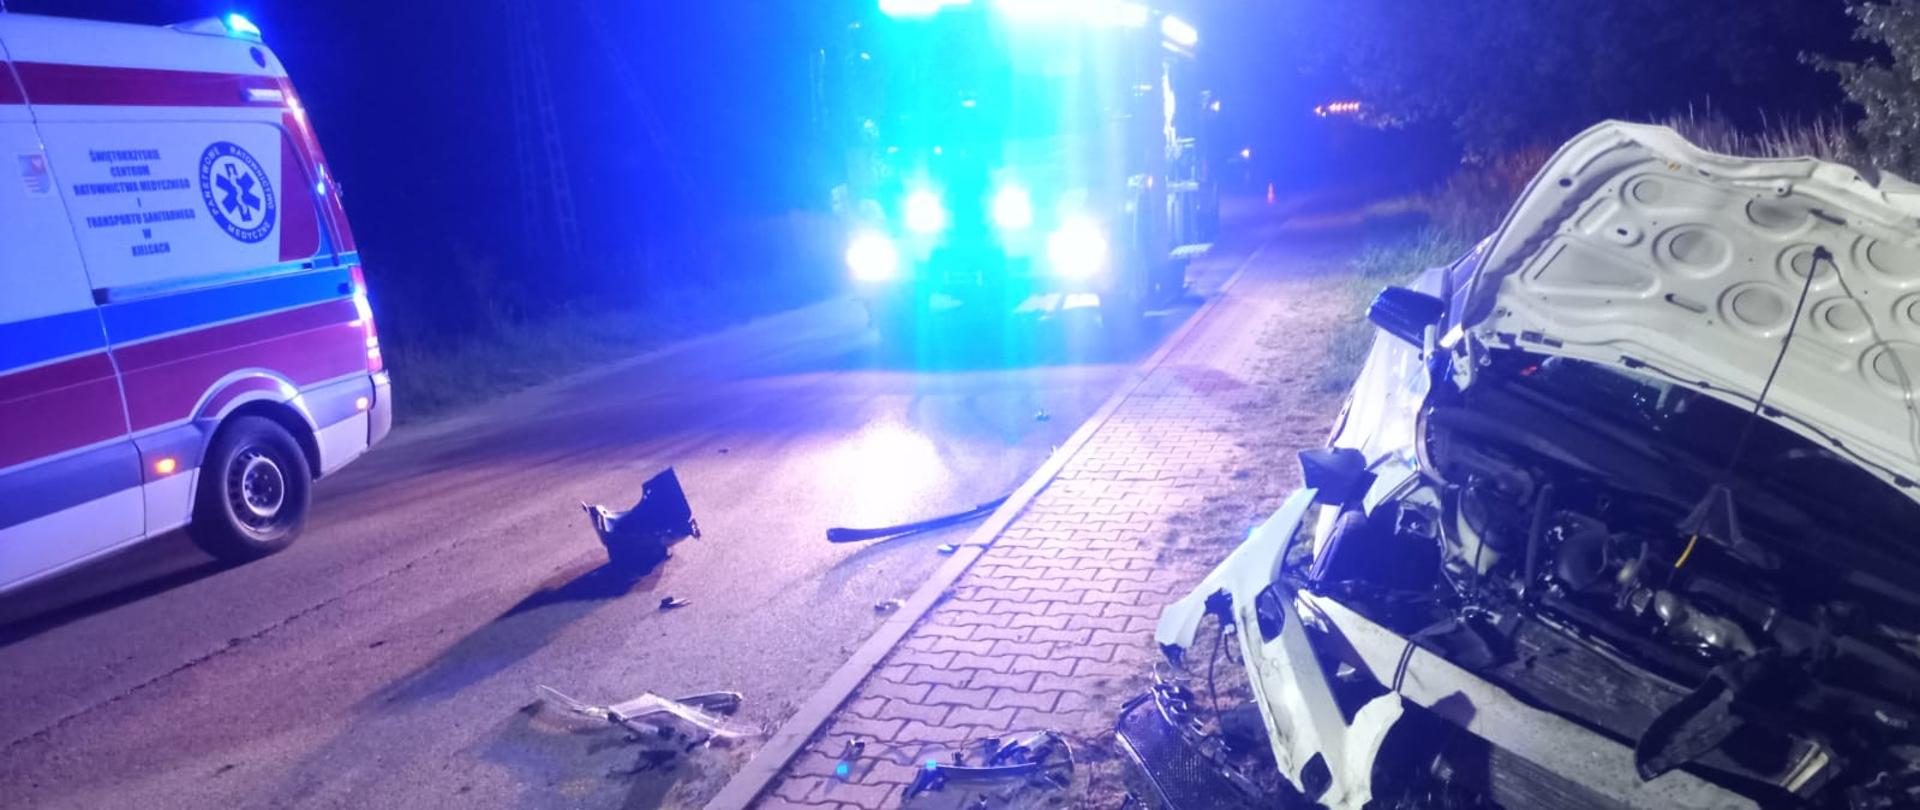 Skutki wypadku - po prawej rozbity samochód w środków wóz strażacki po lewej ambulans, noc, światła ostrzegawcze pojazdów.